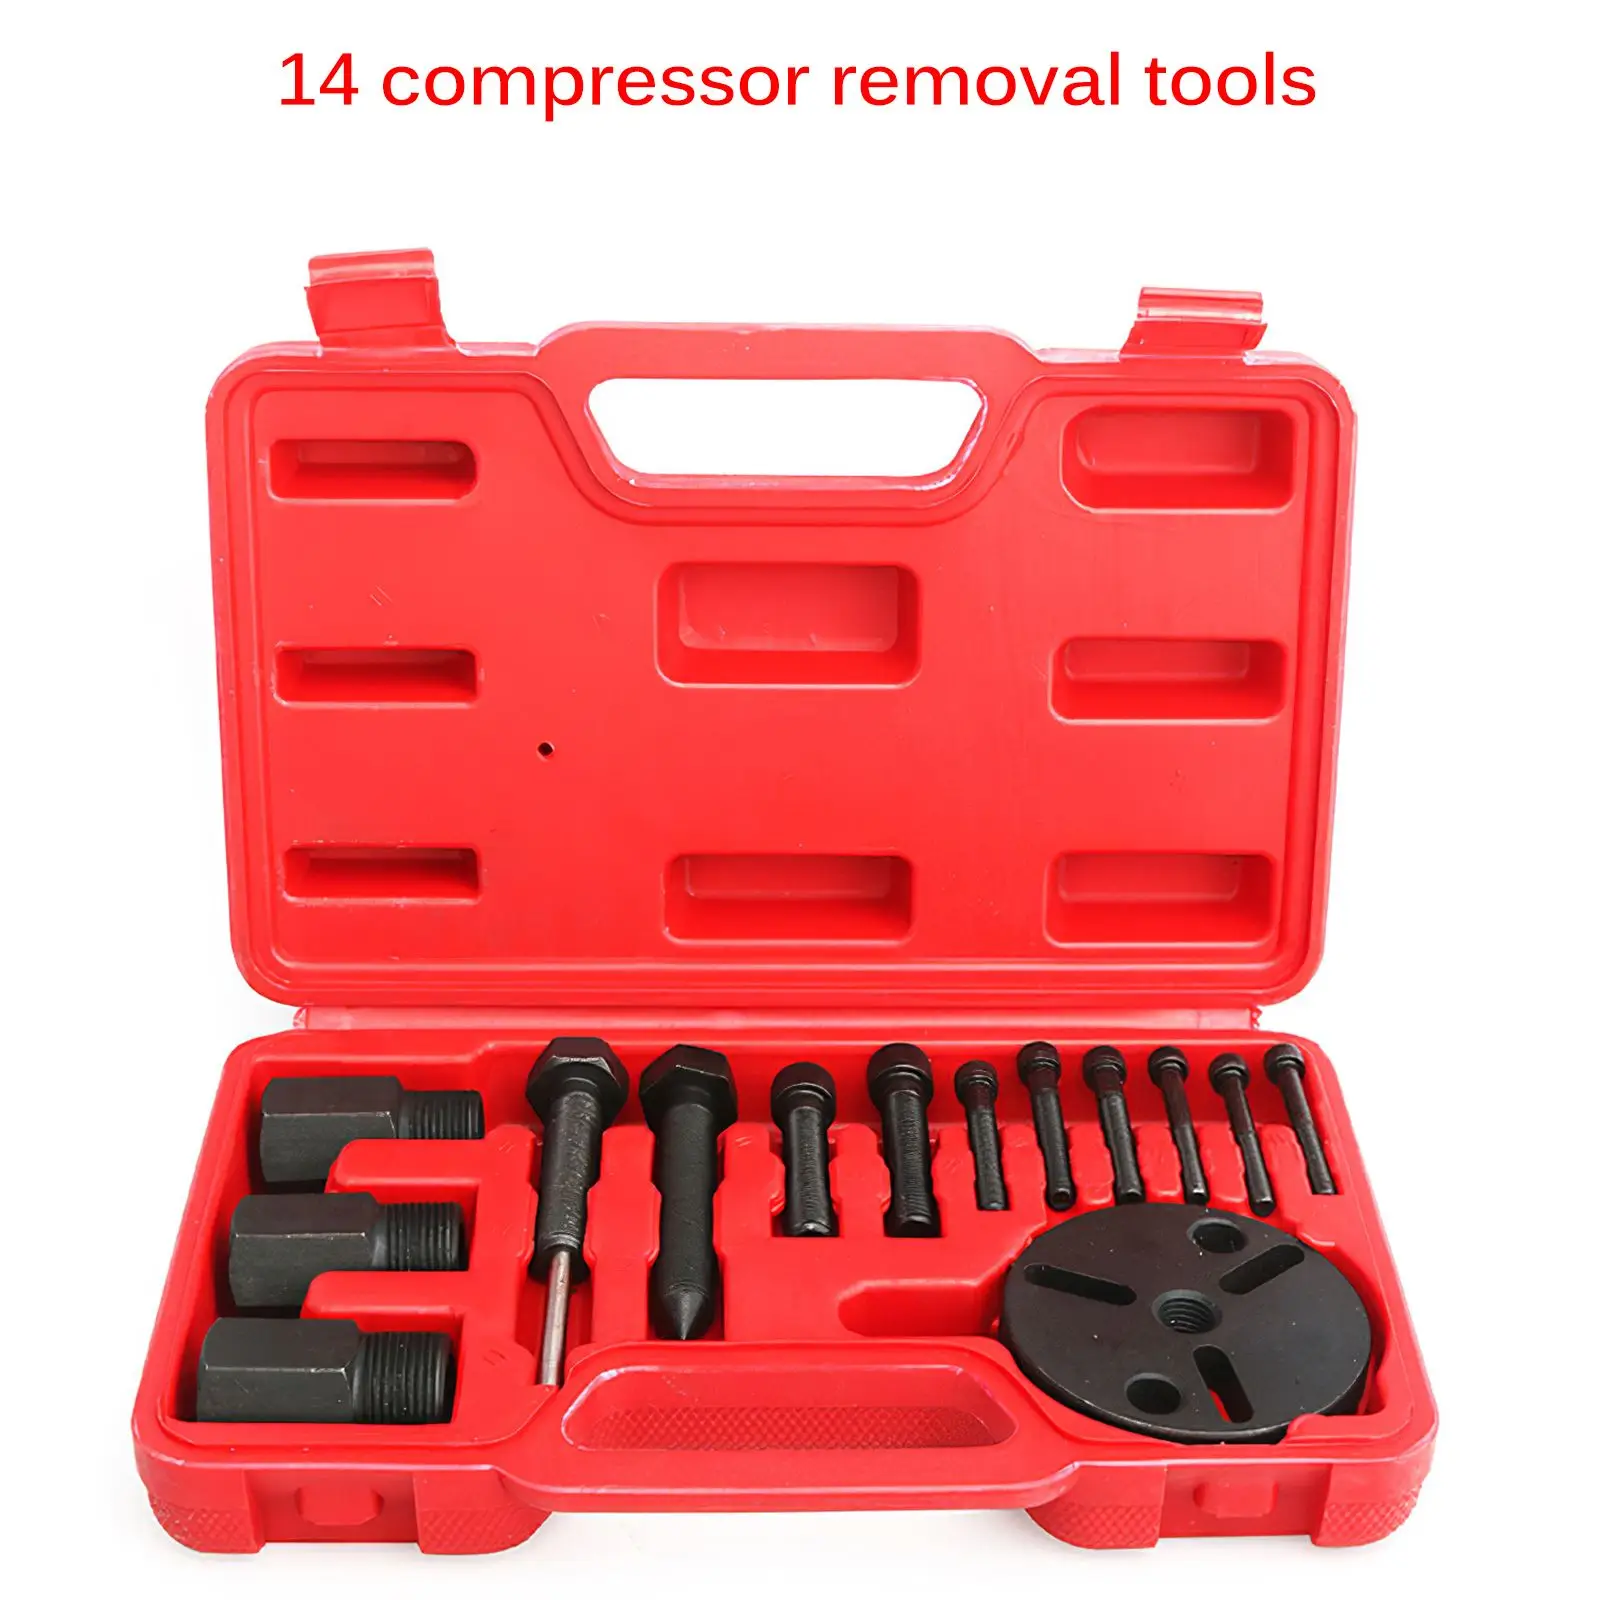 

14Pcs A/C R134a R12 Compressor Clutch Hub Puller Kit Remover & Installer Repair Tool Set Air Conditioning Compressor Repair Tool